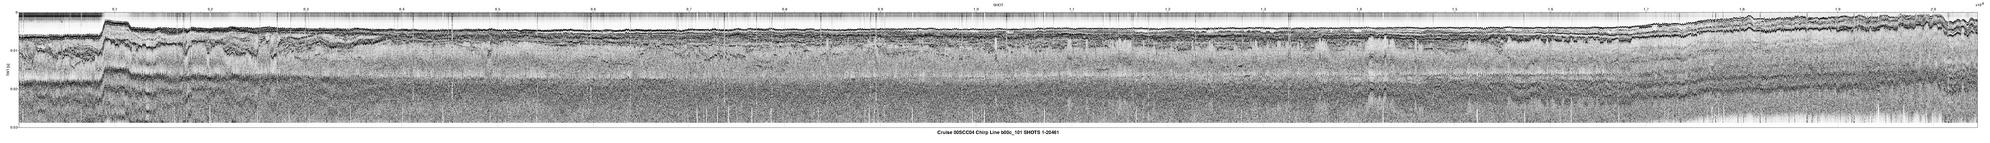 00SCC04 b00c_101 seismic profile image